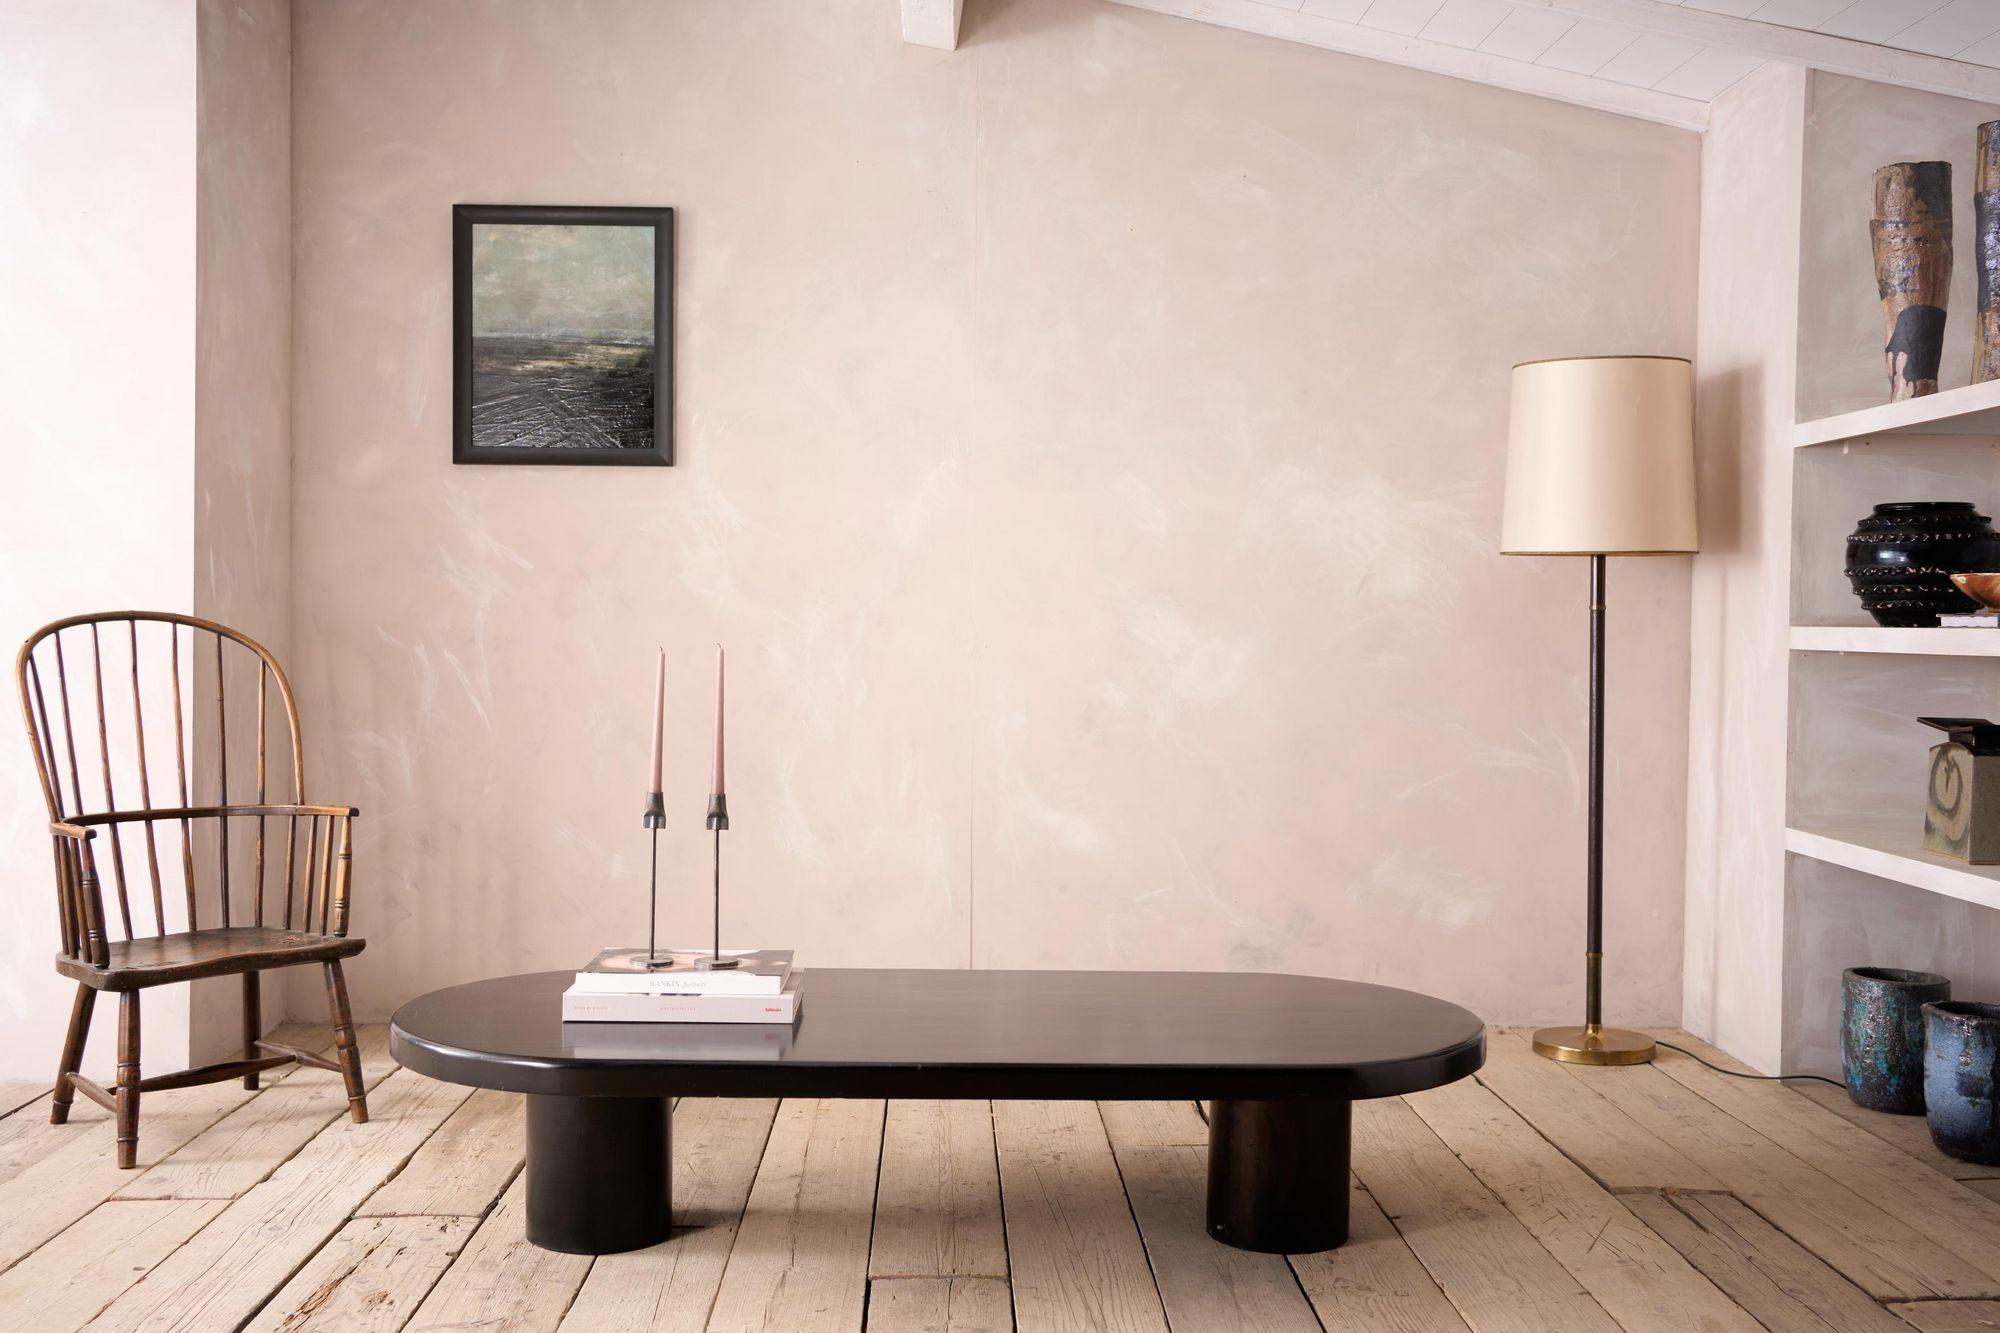 20th century Black lacquer architect design coffee table In Excellent Condition For Sale In Malton, GB